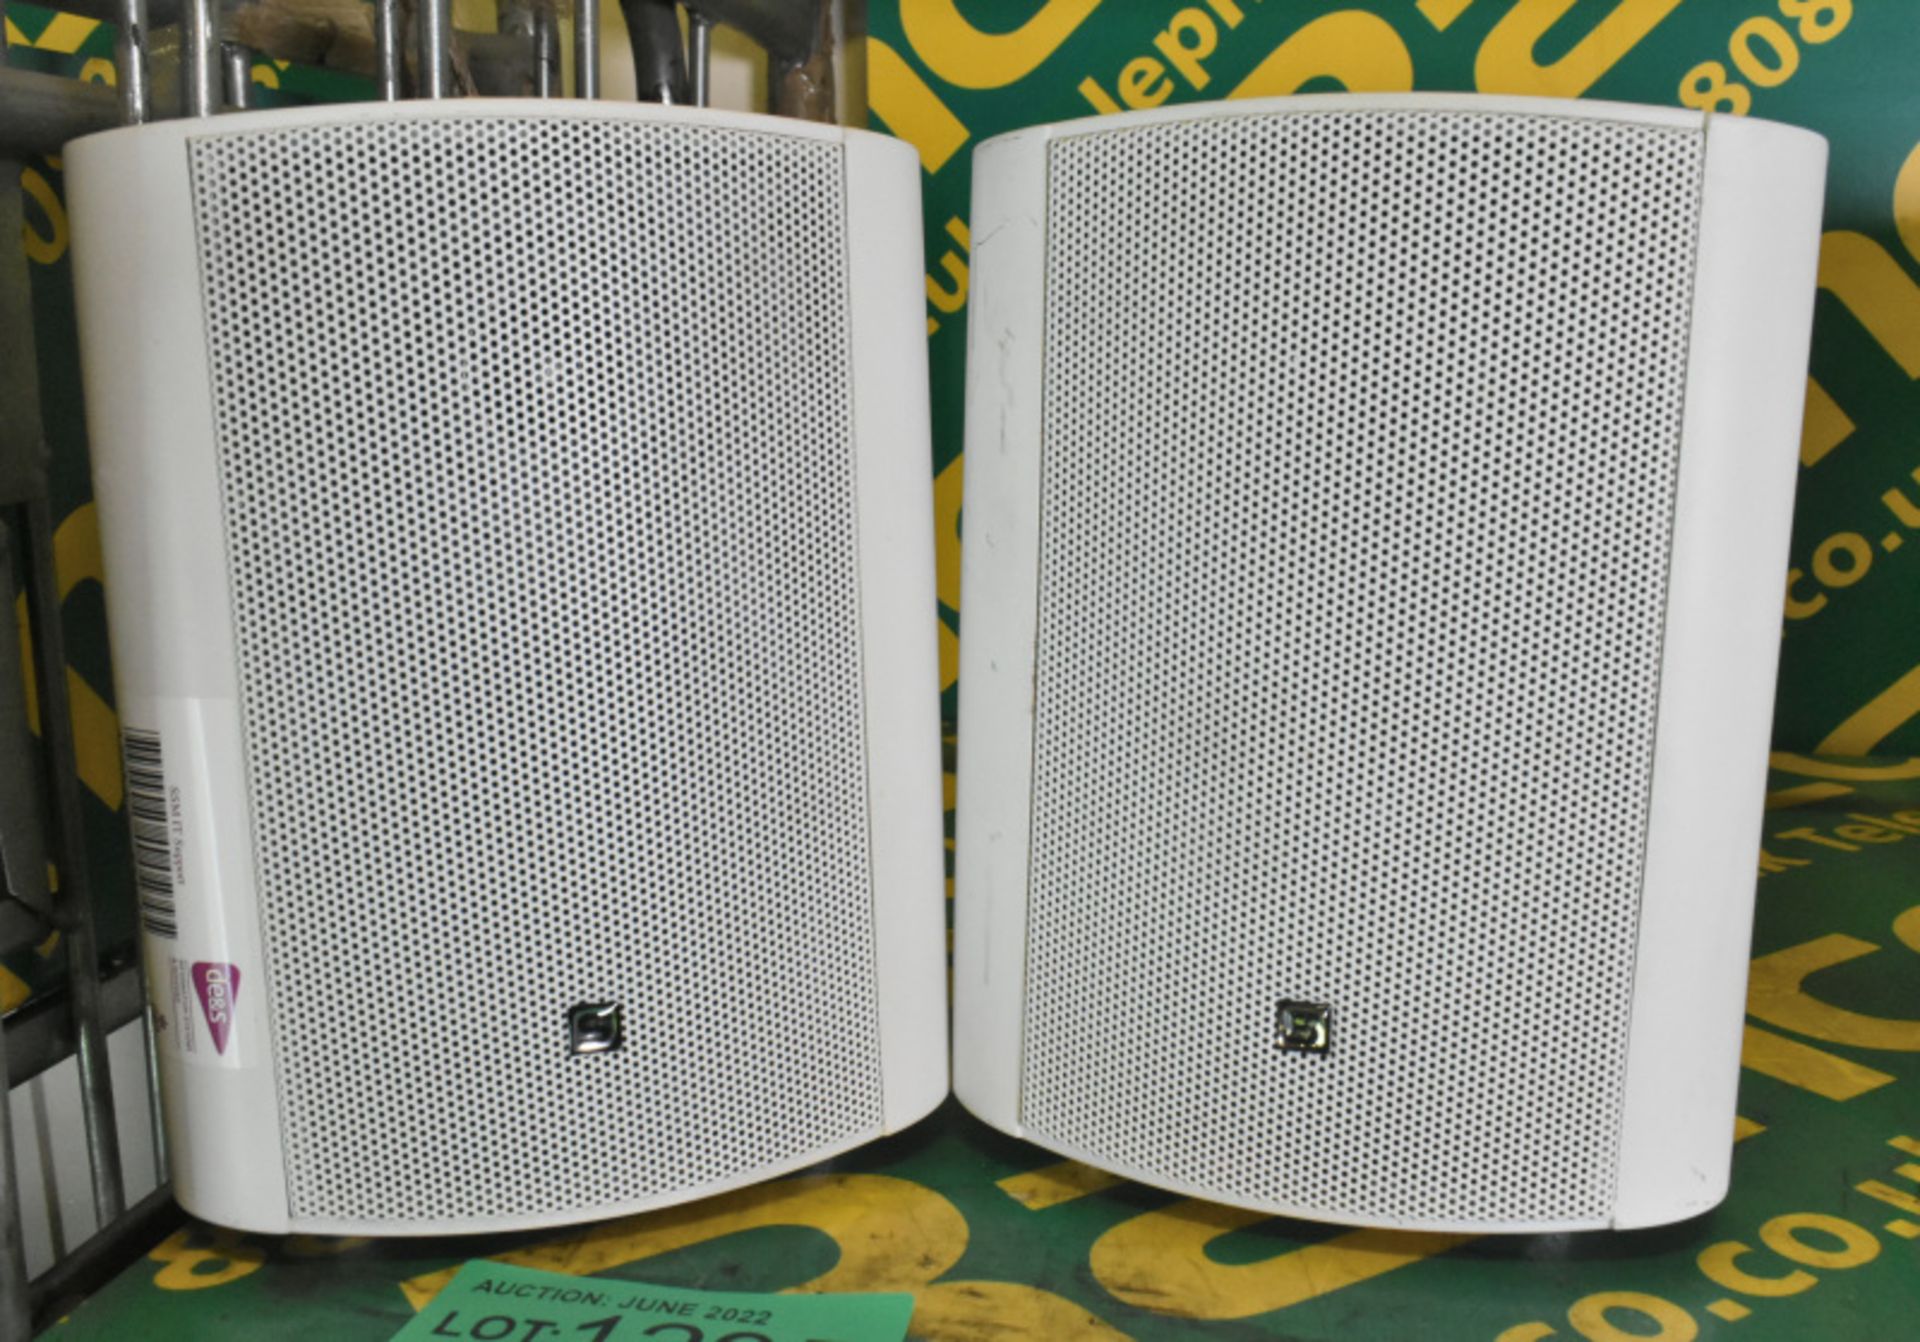 1 pair of wall mountable speakers